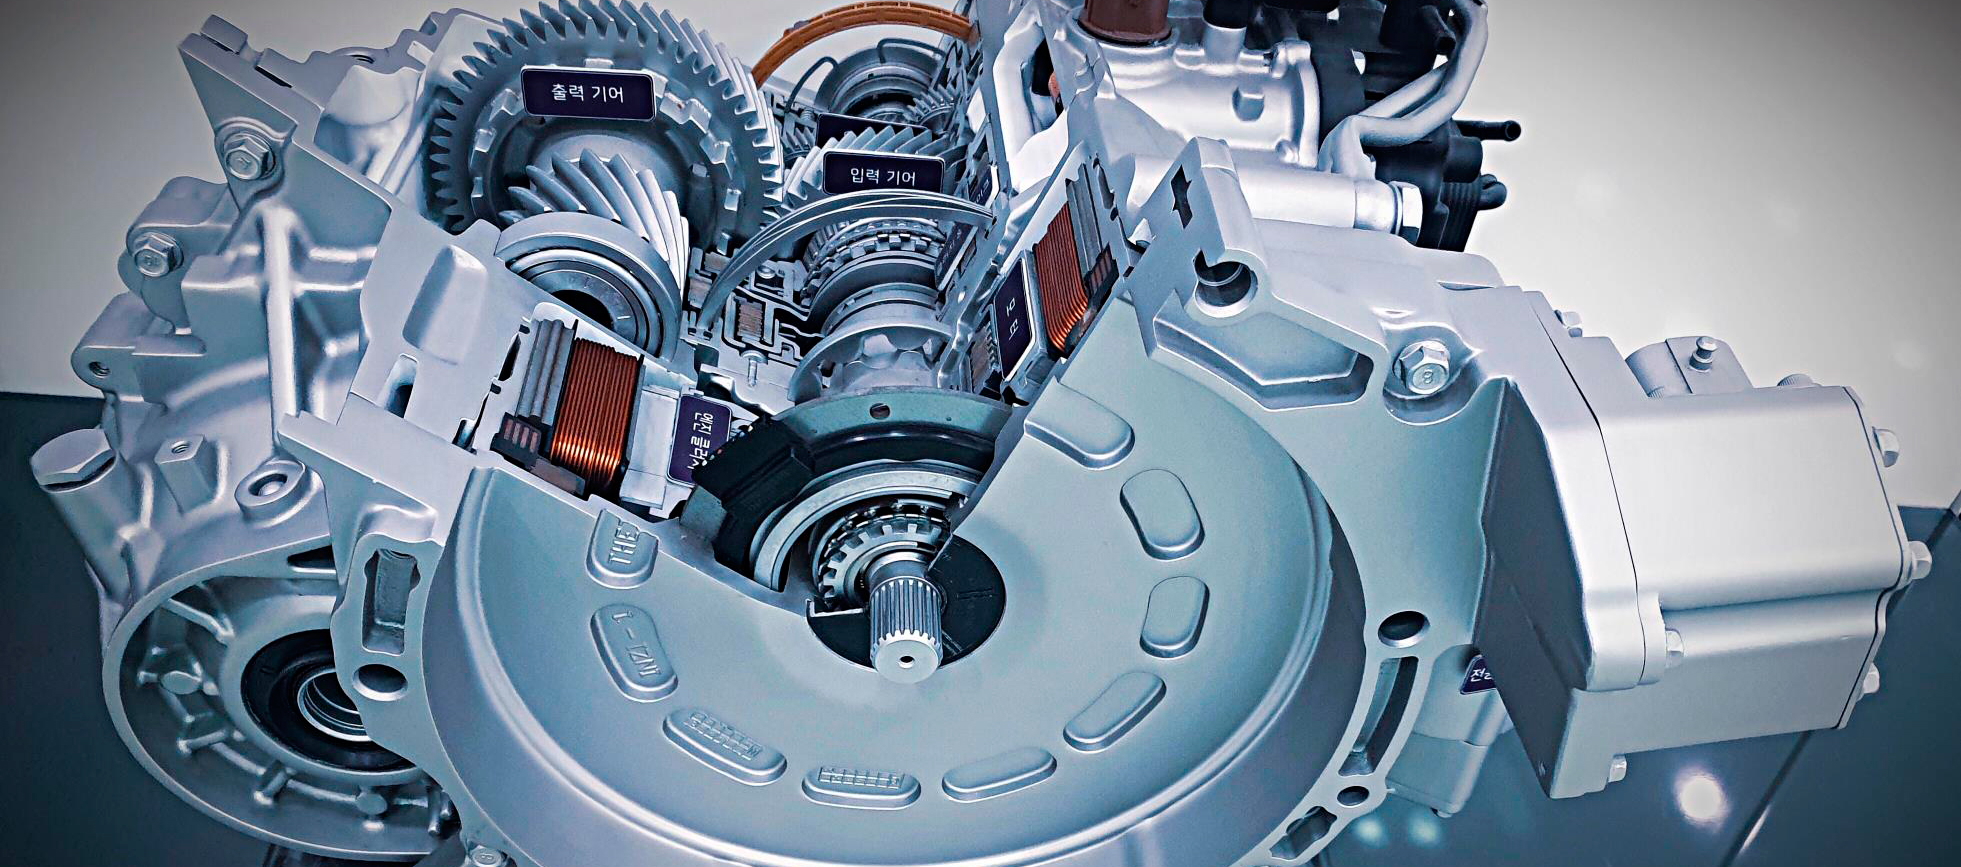 Hyundai ha desarrollado la primera tecnología de transmisión Active Shift Control (ASC) del mundo